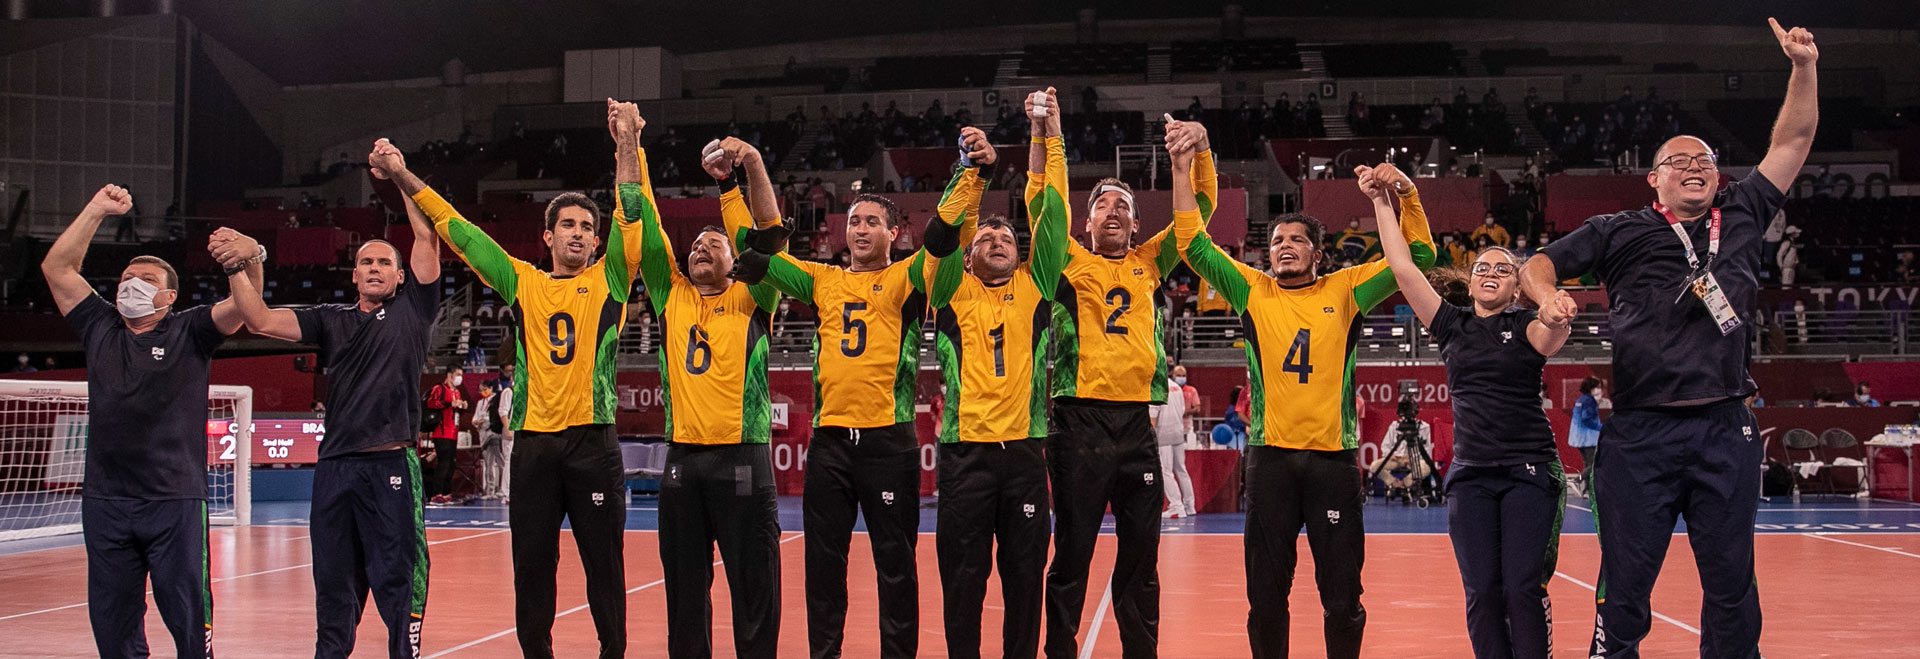 foto mostra time brasileiro de goalball posicionado em linha, com as mãos levantadas, comemorando vitória